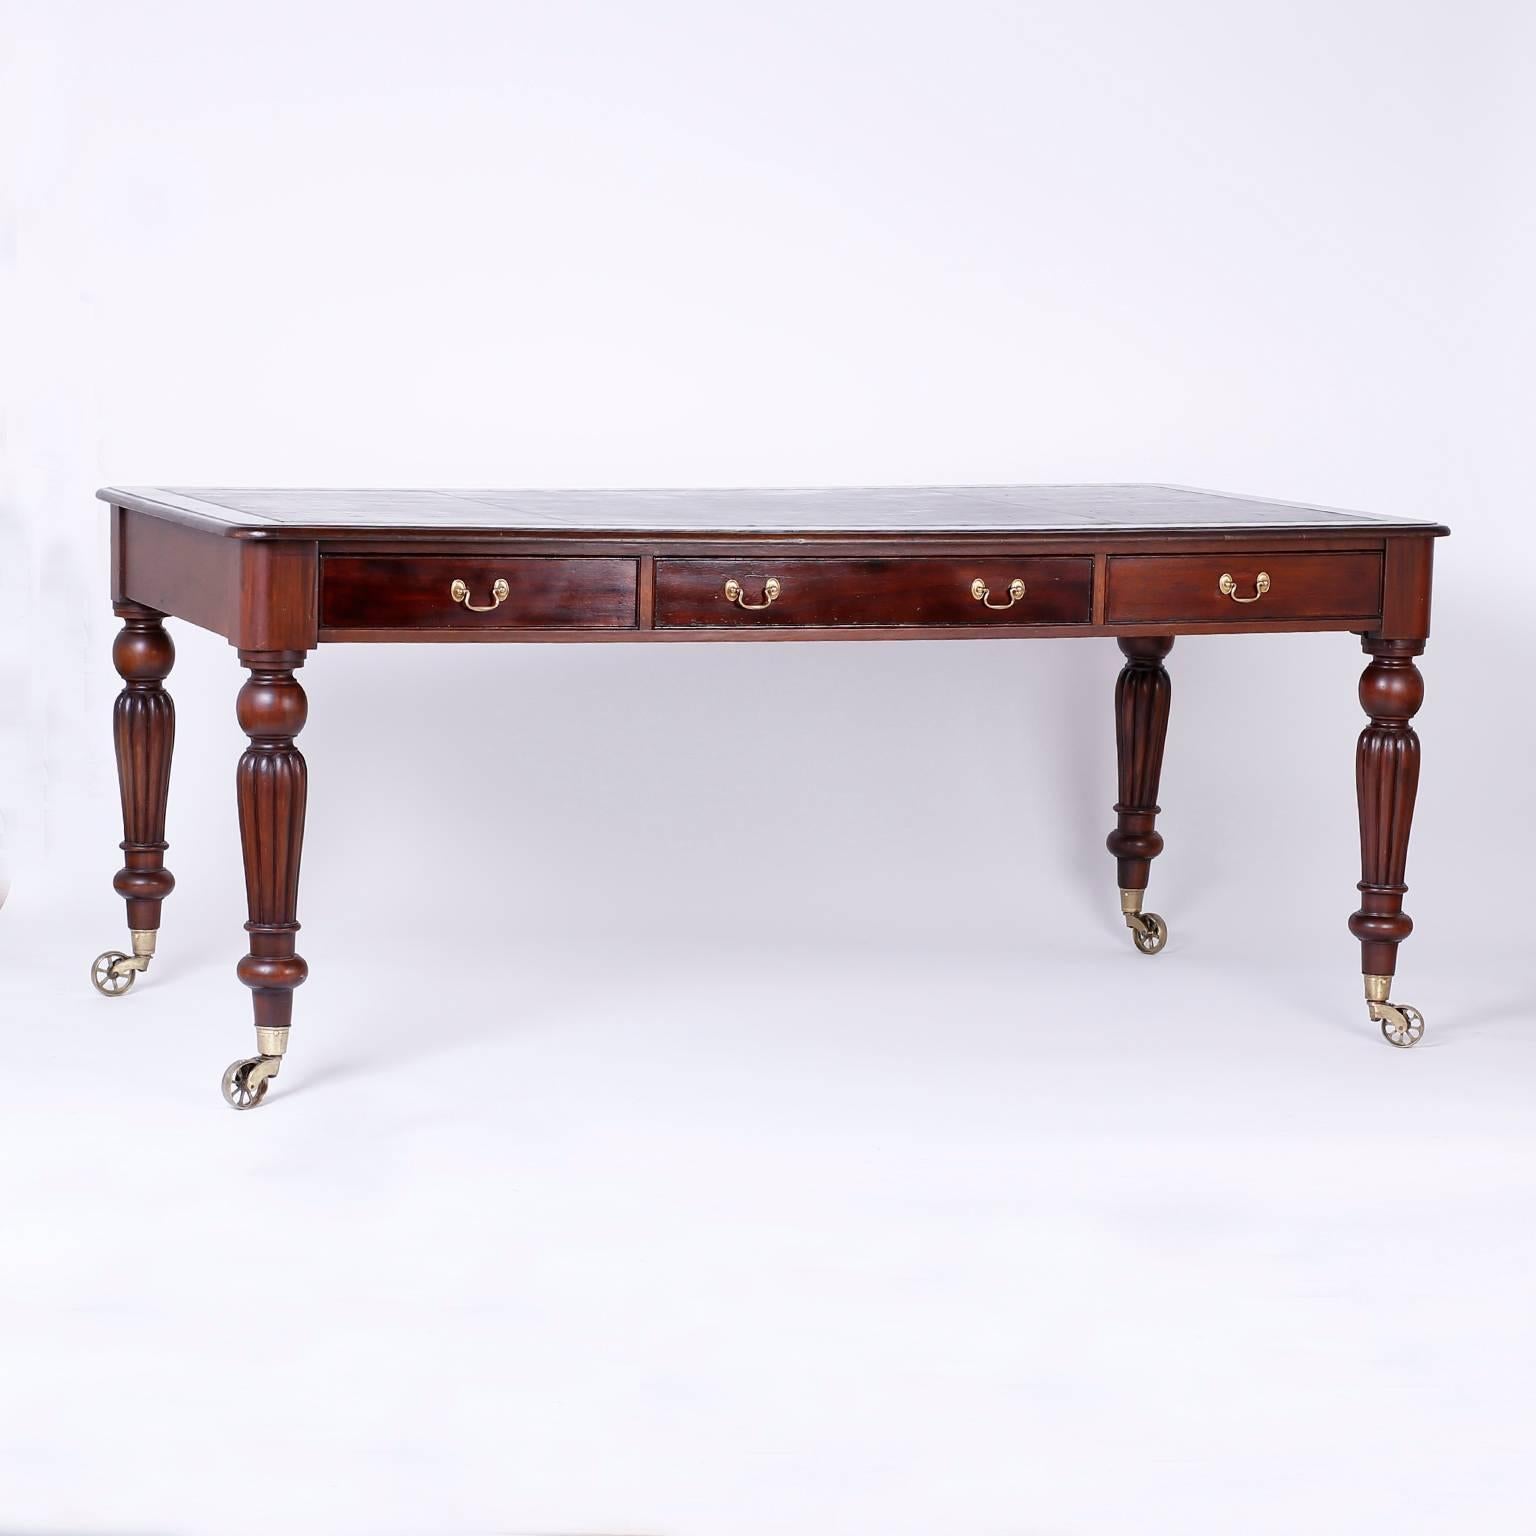 English William IV Style Antique Mahogany Partners Desk